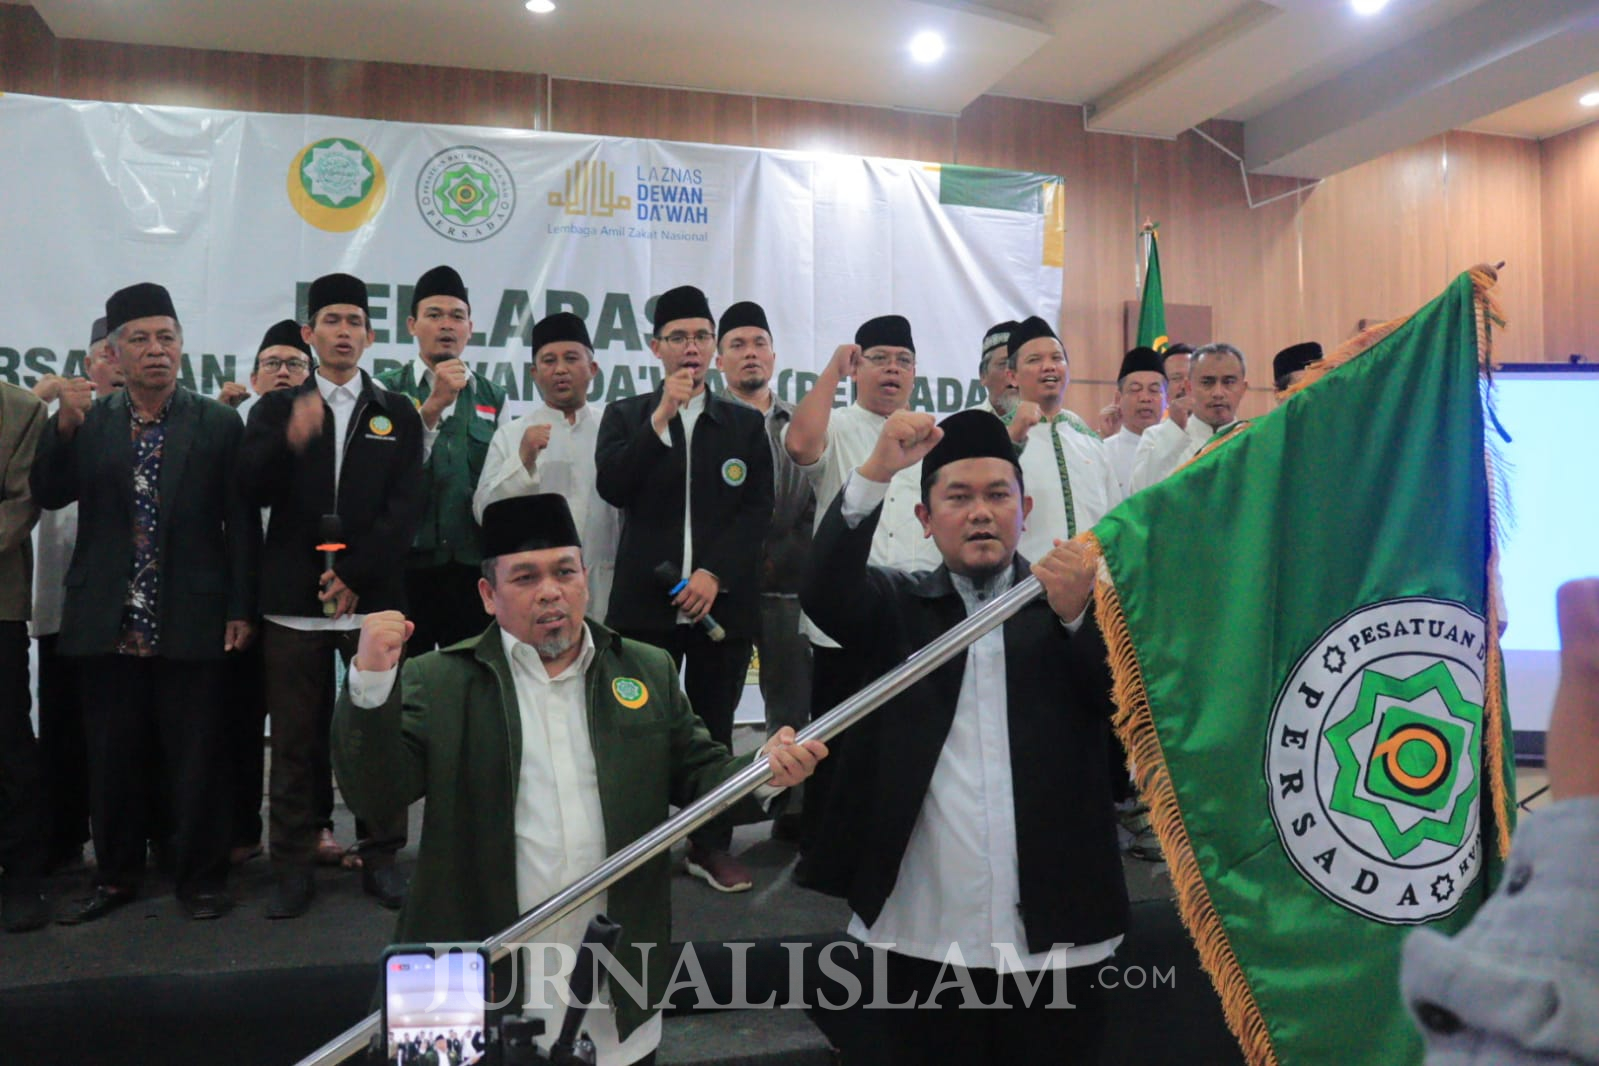 Deklarasi Persatuan Da’i Dewan Da’wah (Persada) Jawa Barat Dihadiri Ribuan Dai